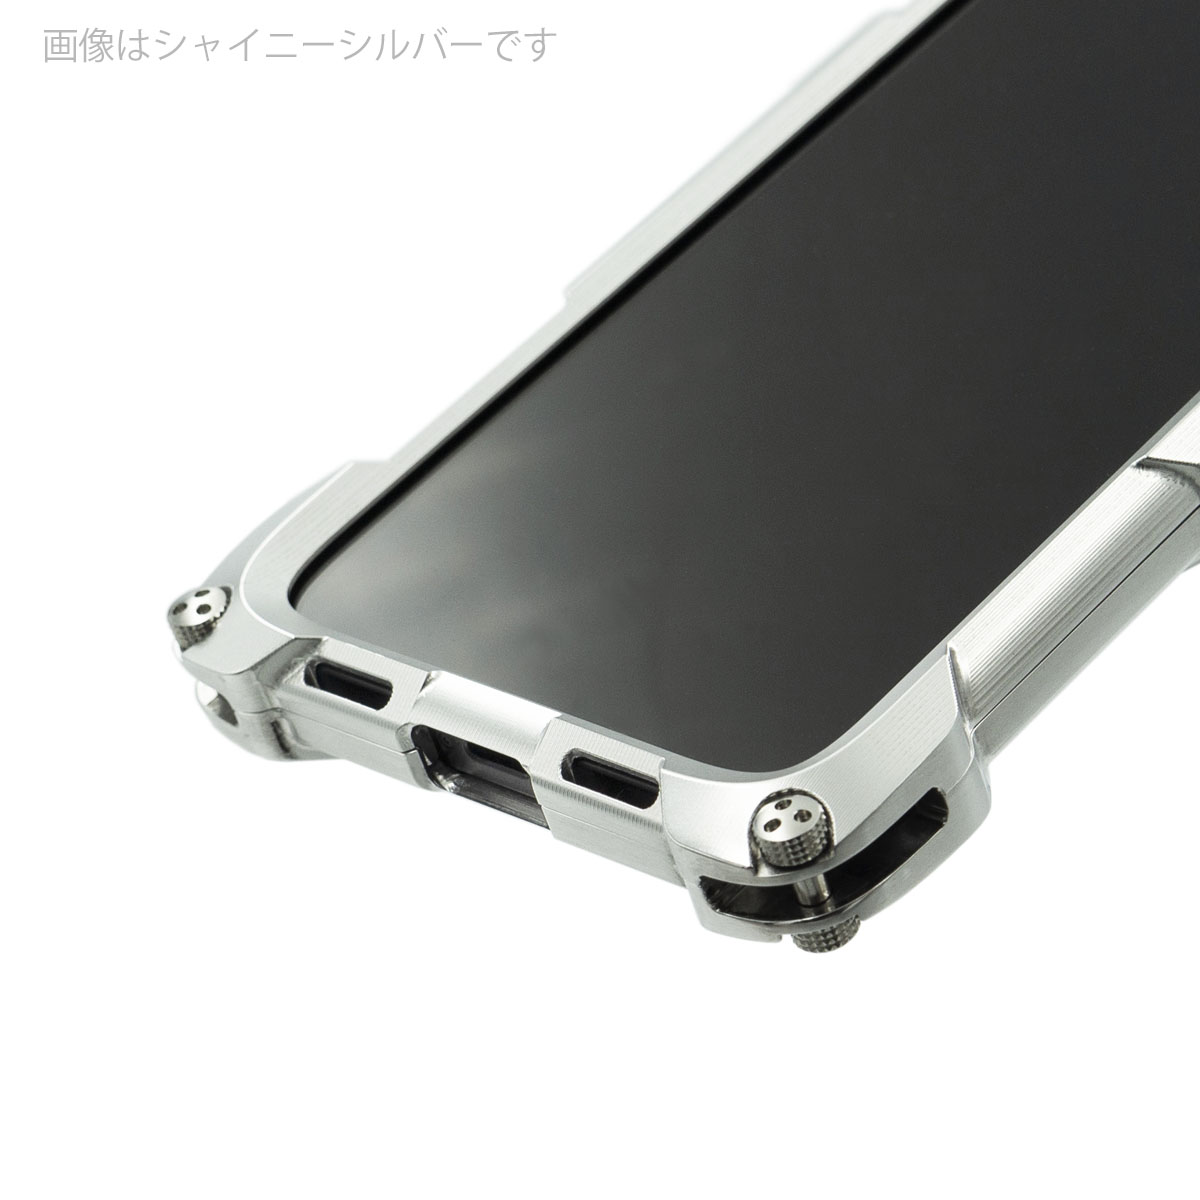 Quattro for iPhone12Pro Max HD - Carbon fiber back panel models ...